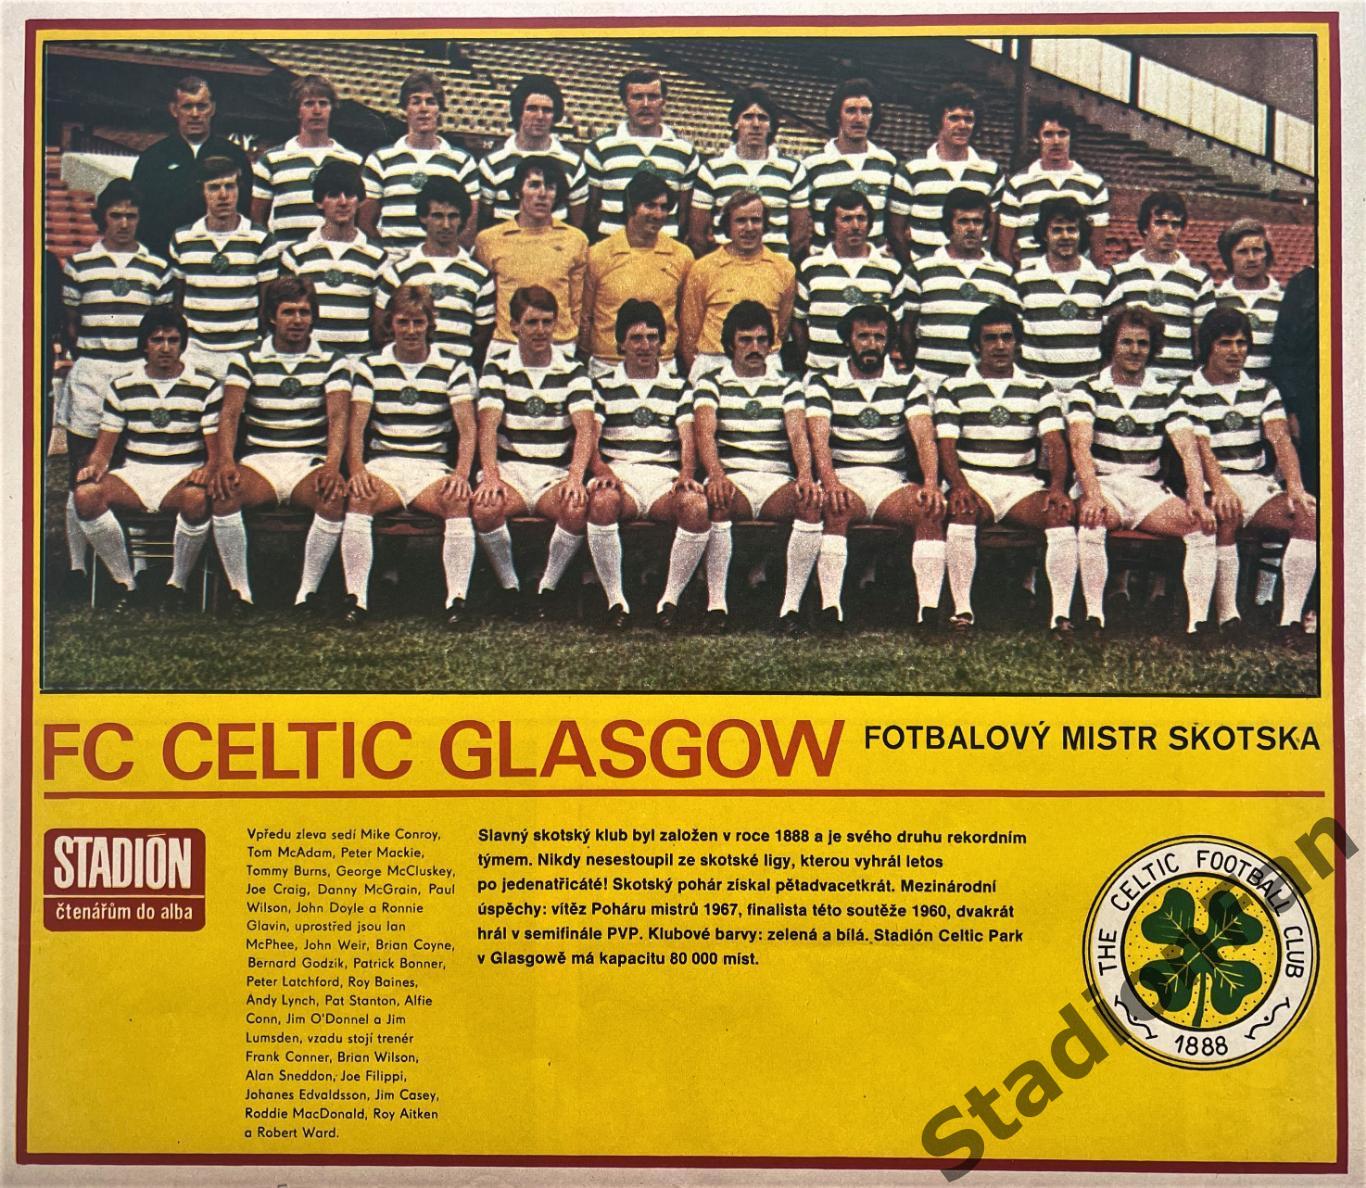 Постер из журнала Стадион (Stadion) - Celtic Glasgow, 1979.